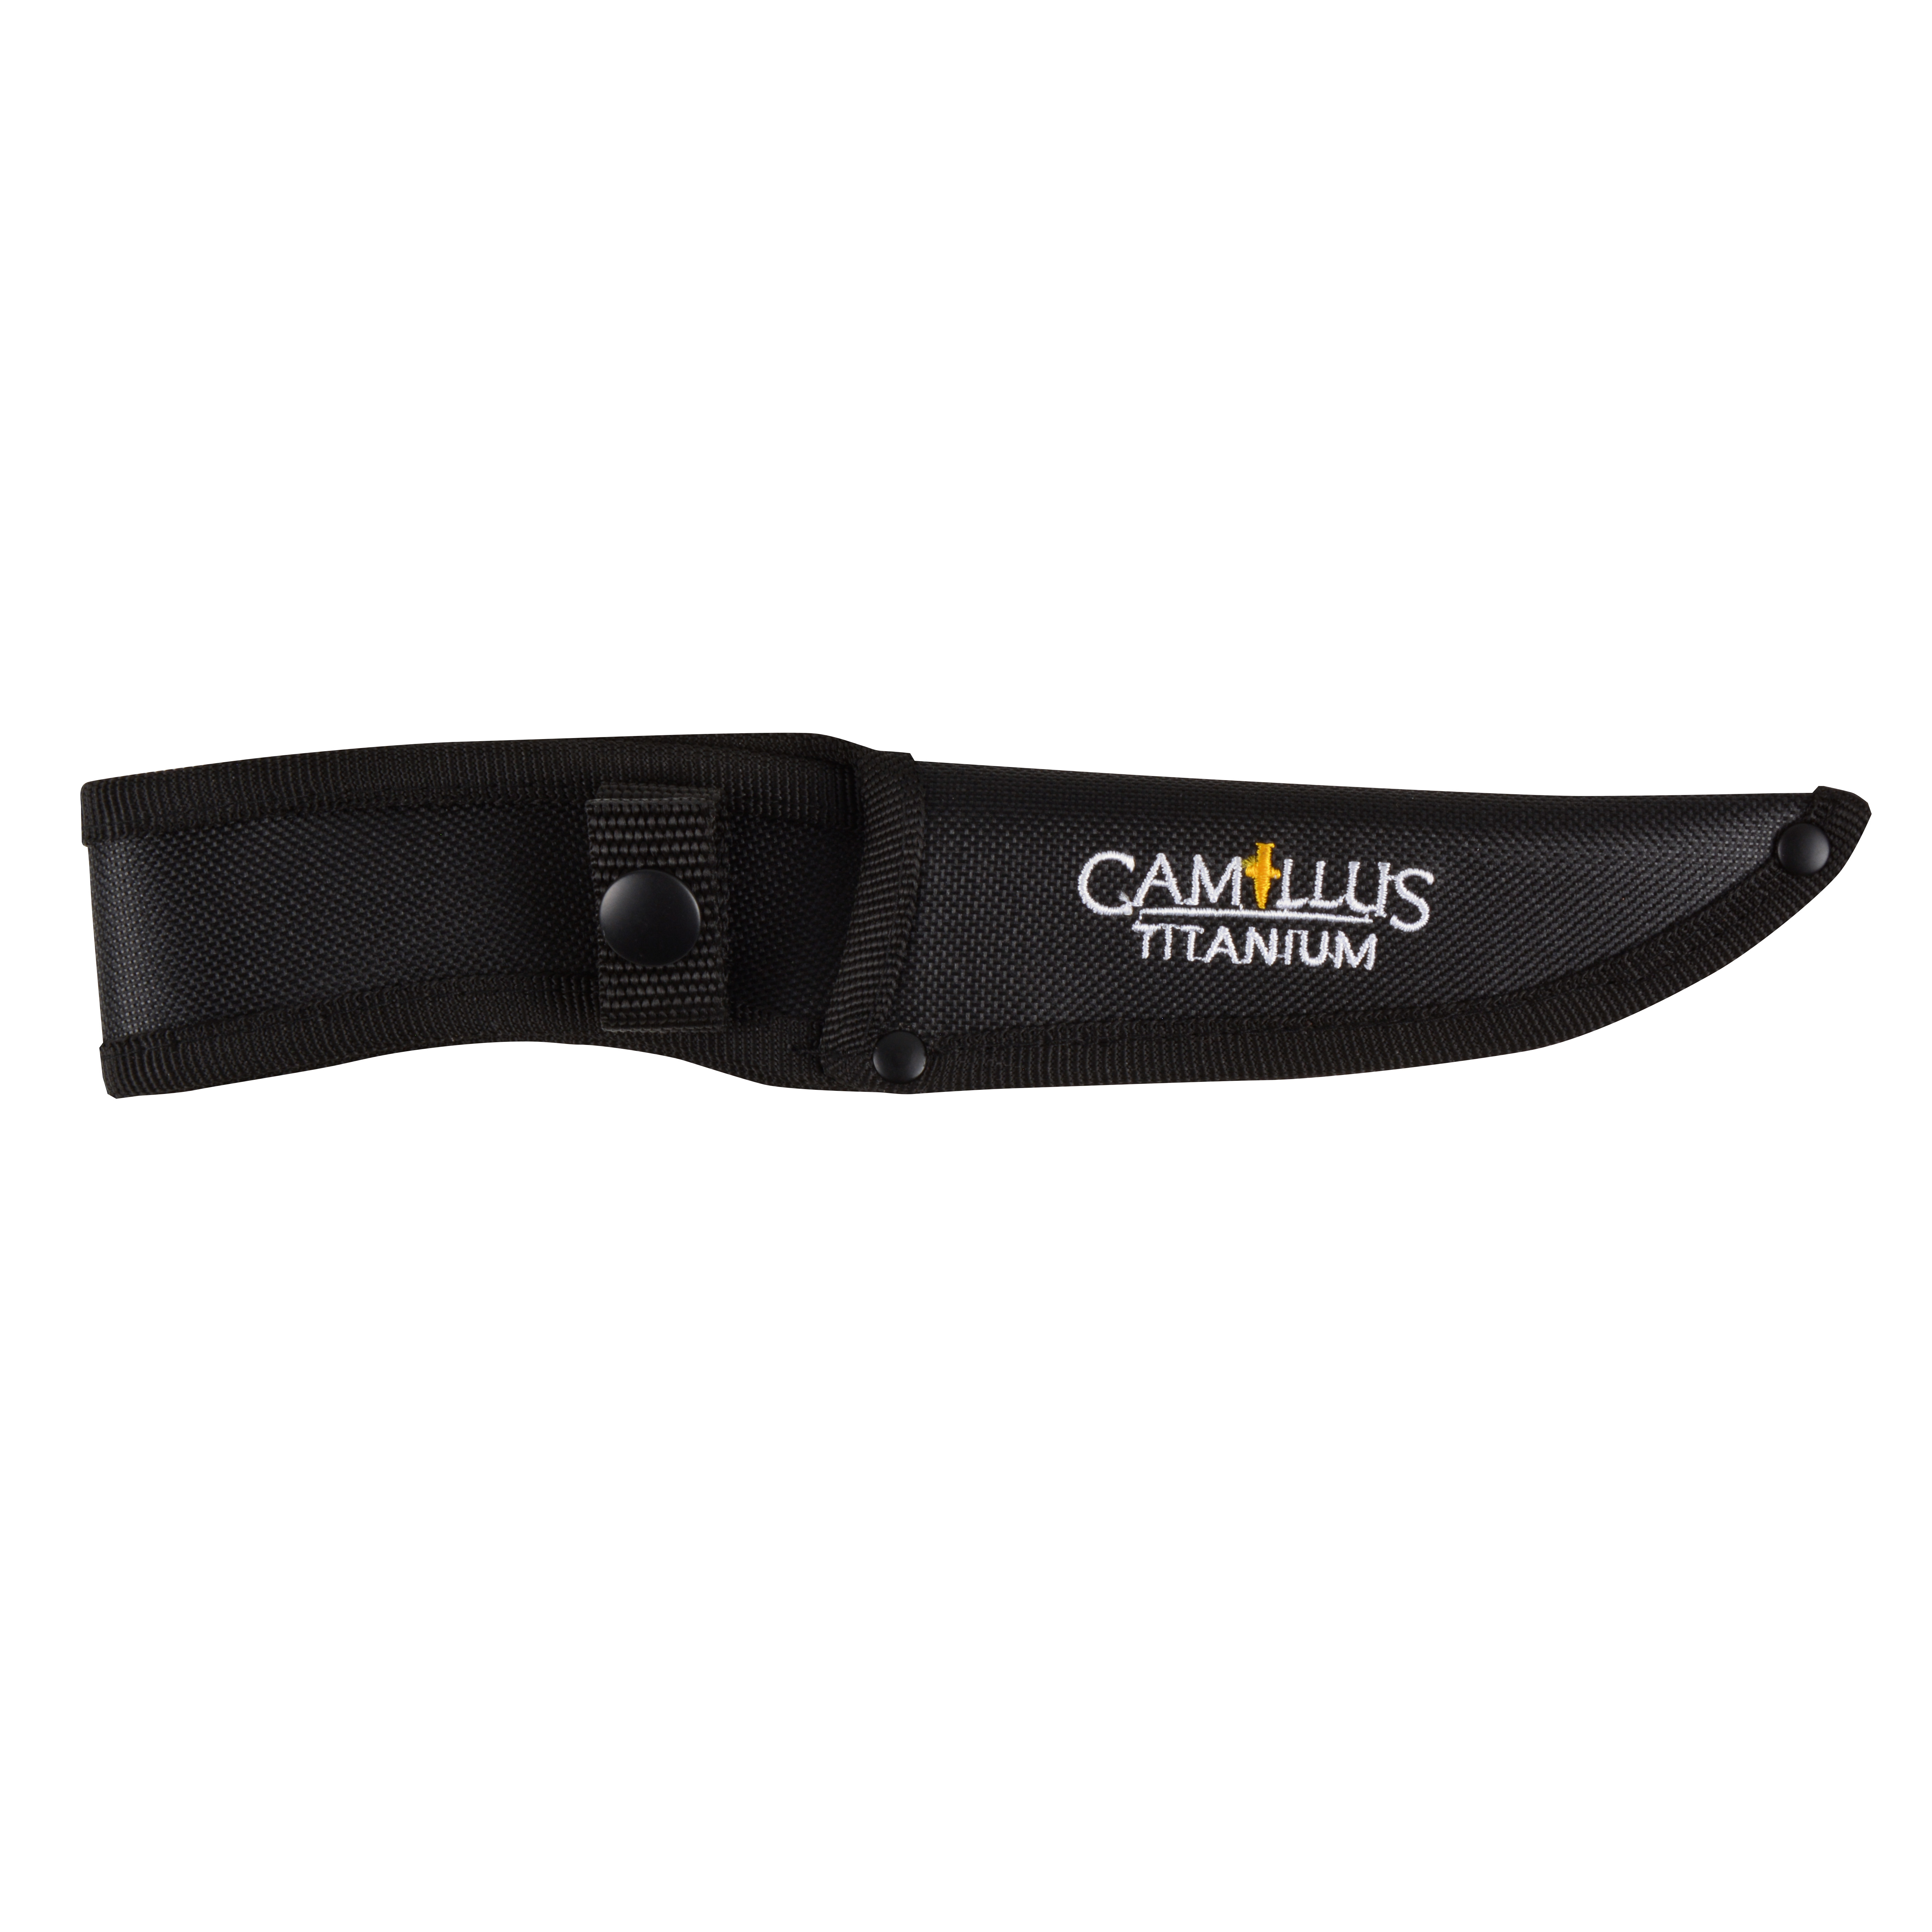 Camillus 10" Boning Knife, 5" Blade, Titanium Bonded, Mossy Oak with Lanyard Hole and Sheath - image 5 of 6